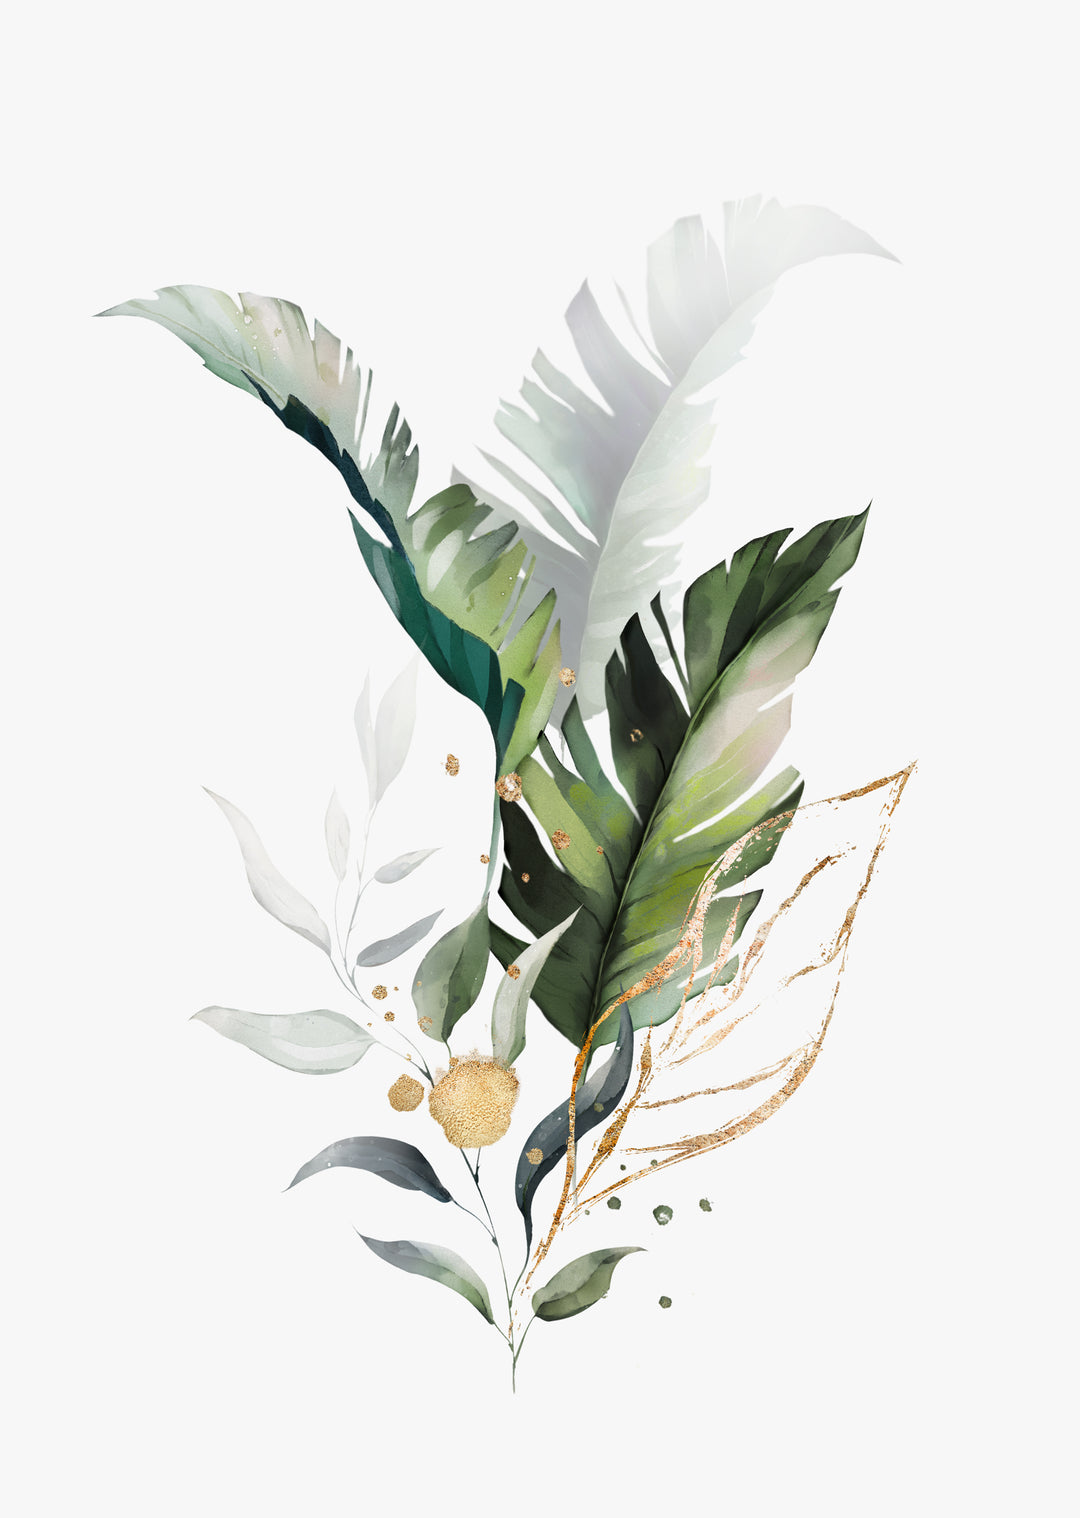 Botanischer Kunstdruck 'Eden' - Pflanzendrucke, botanische Kunstdrucke und botanische Illustrationen